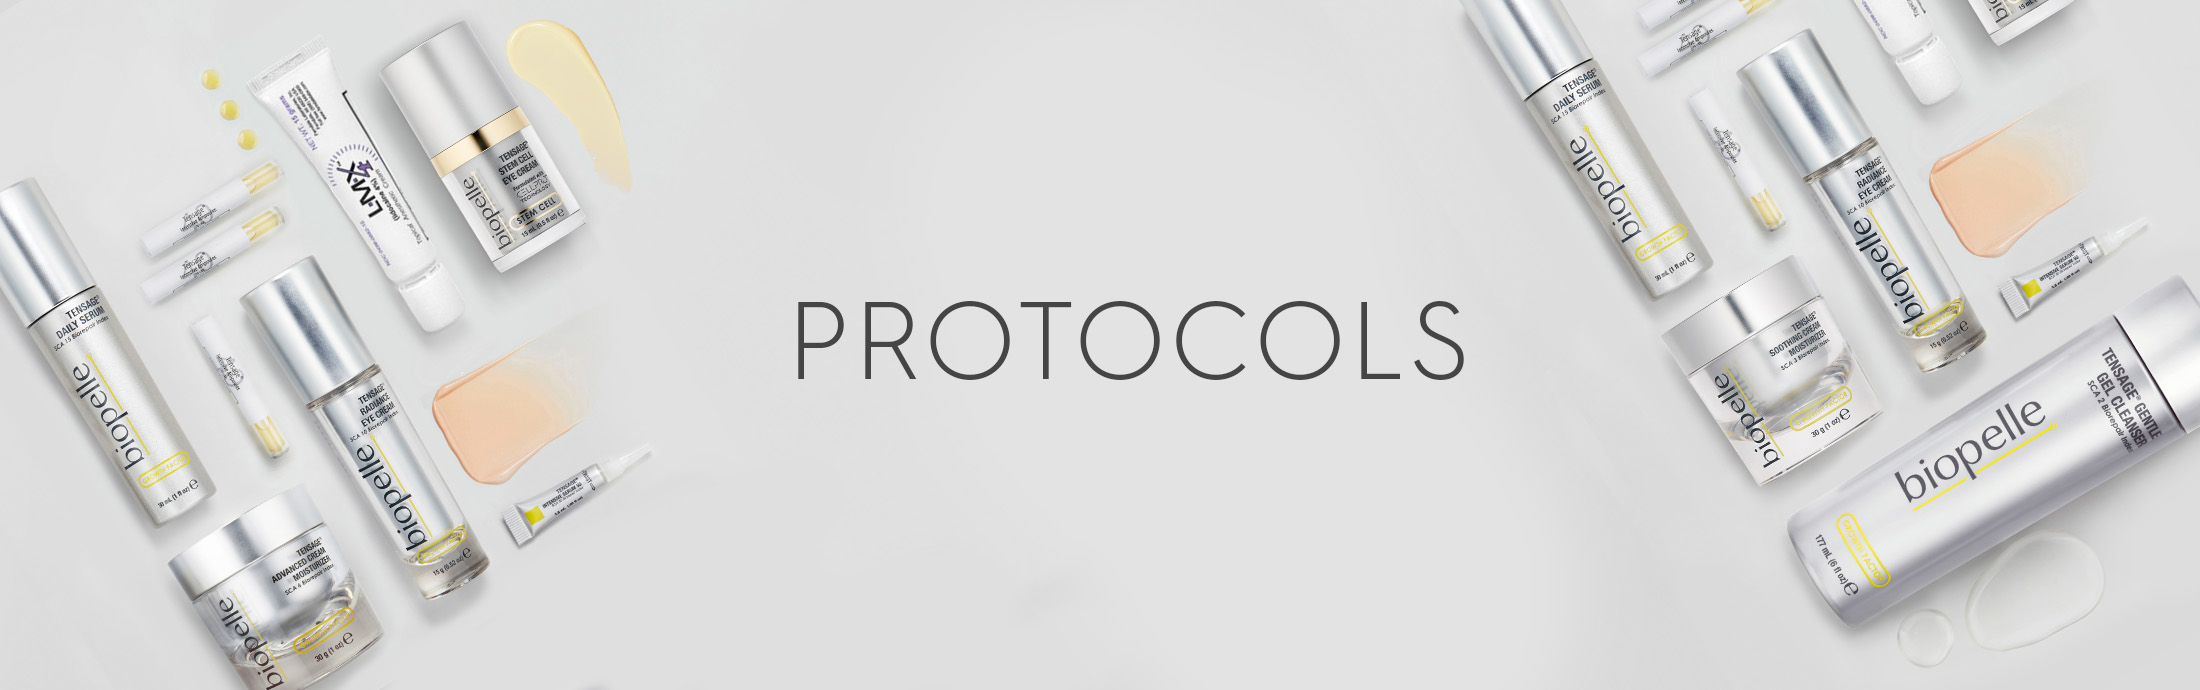 Biopelle Protocol Docs